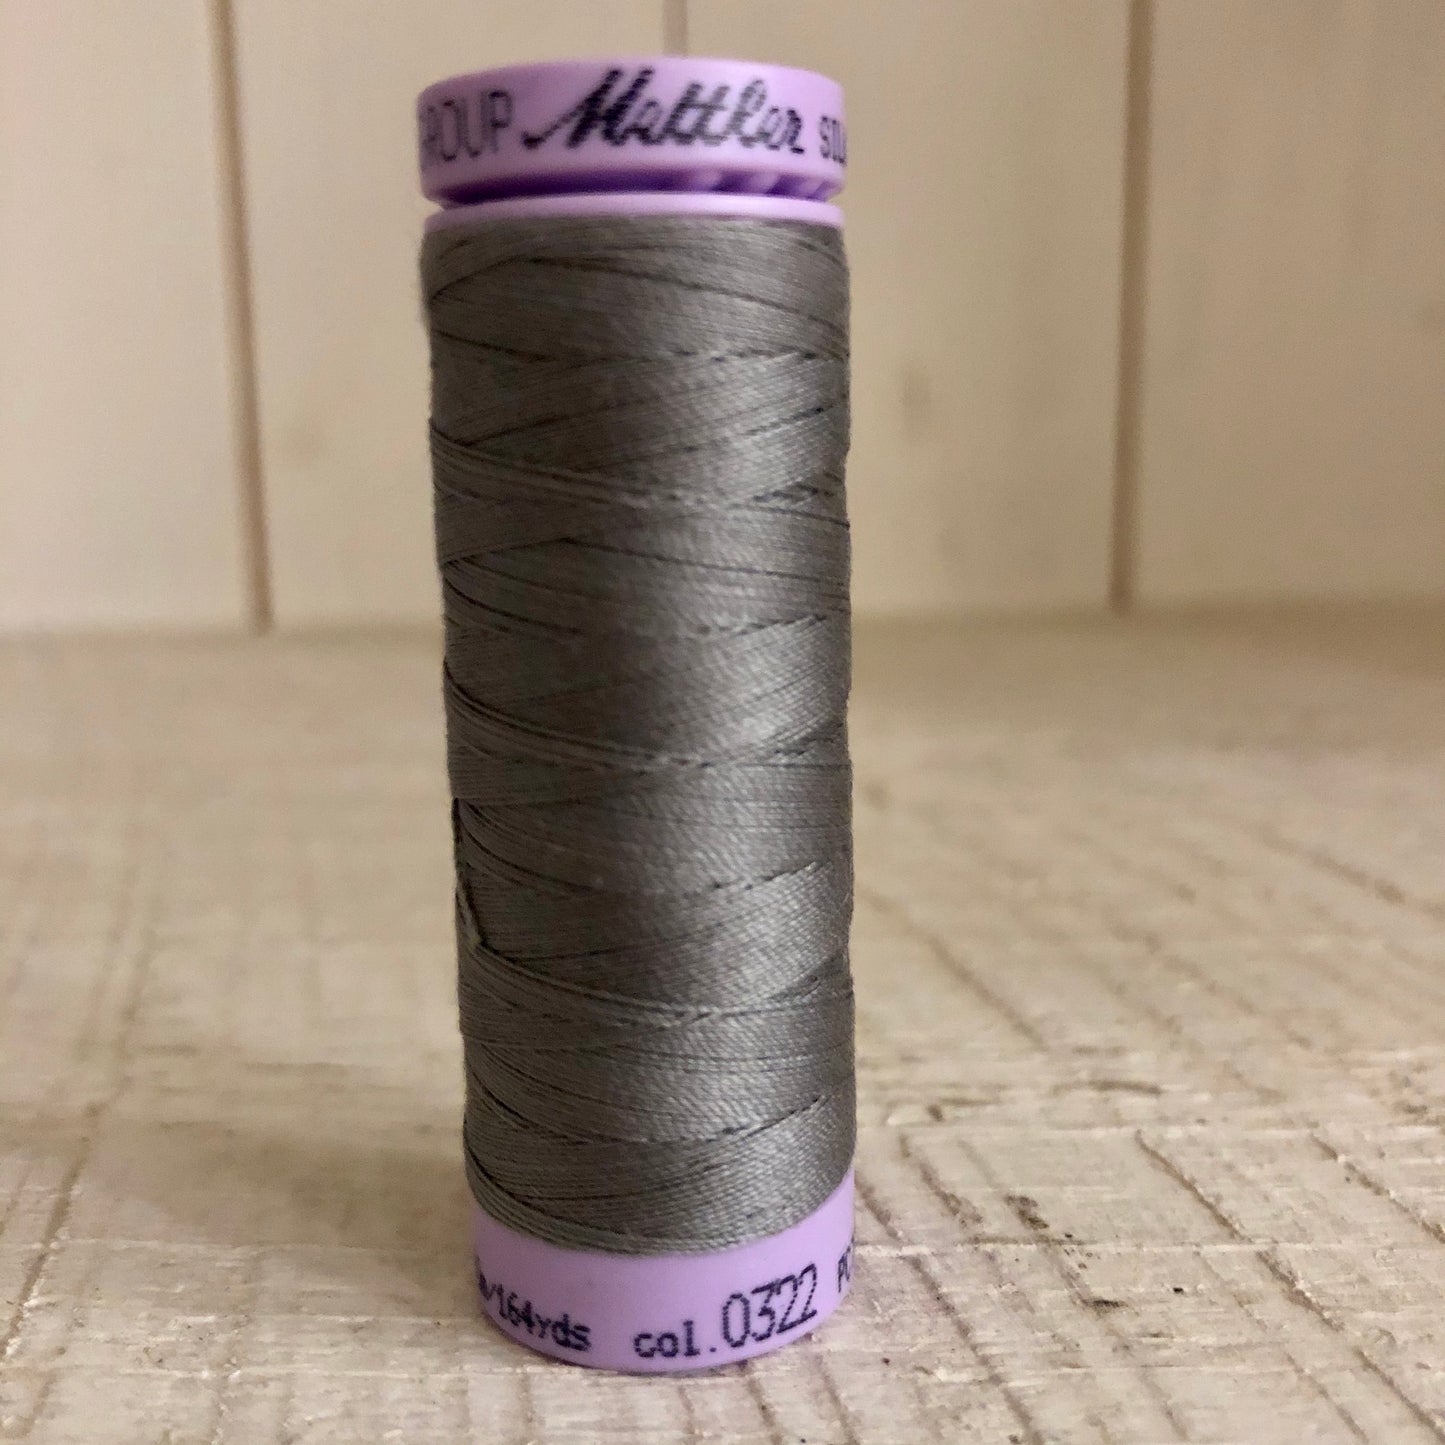 Mettler Silk Finish Cotton Thread, Rain Cloud 0322, 150 meter Spool